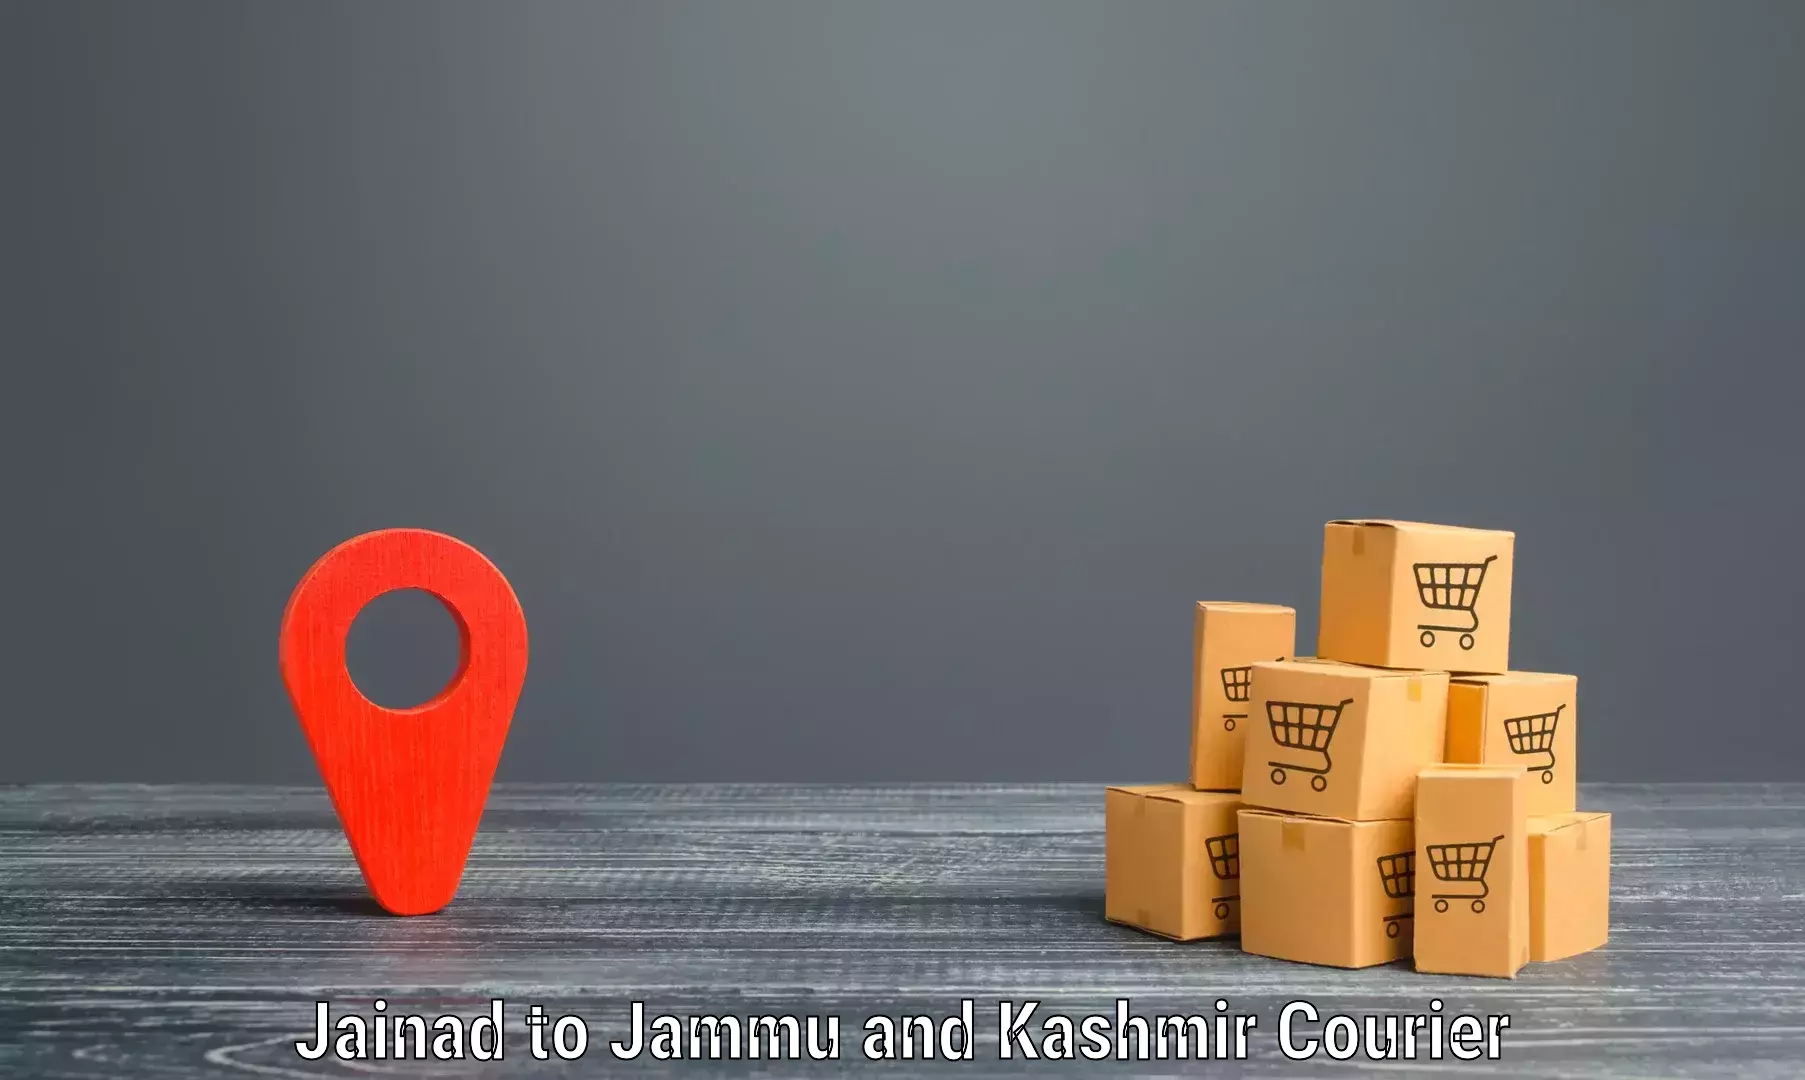 Punctual parcel services Jainad to Leh